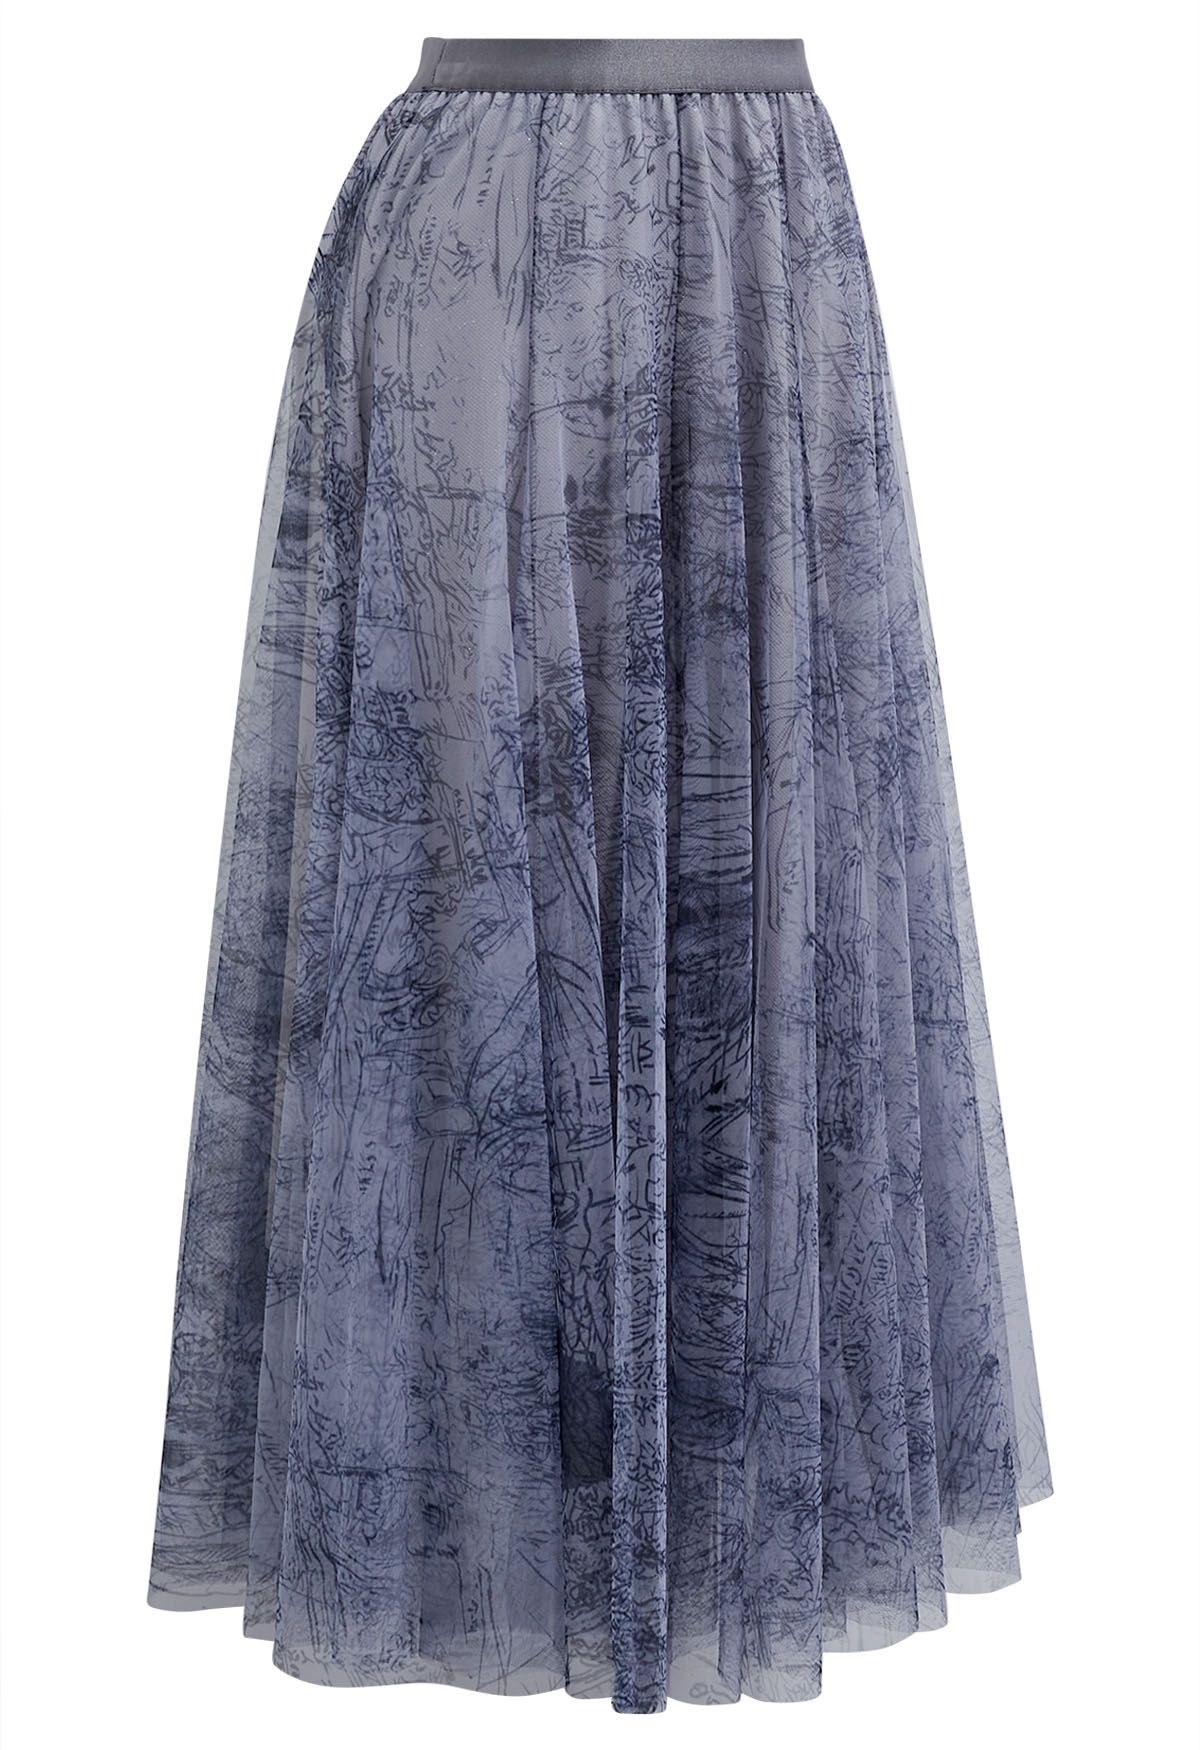 Glitter Fairyland Mesh Tulle Skirt in Dusty Blue